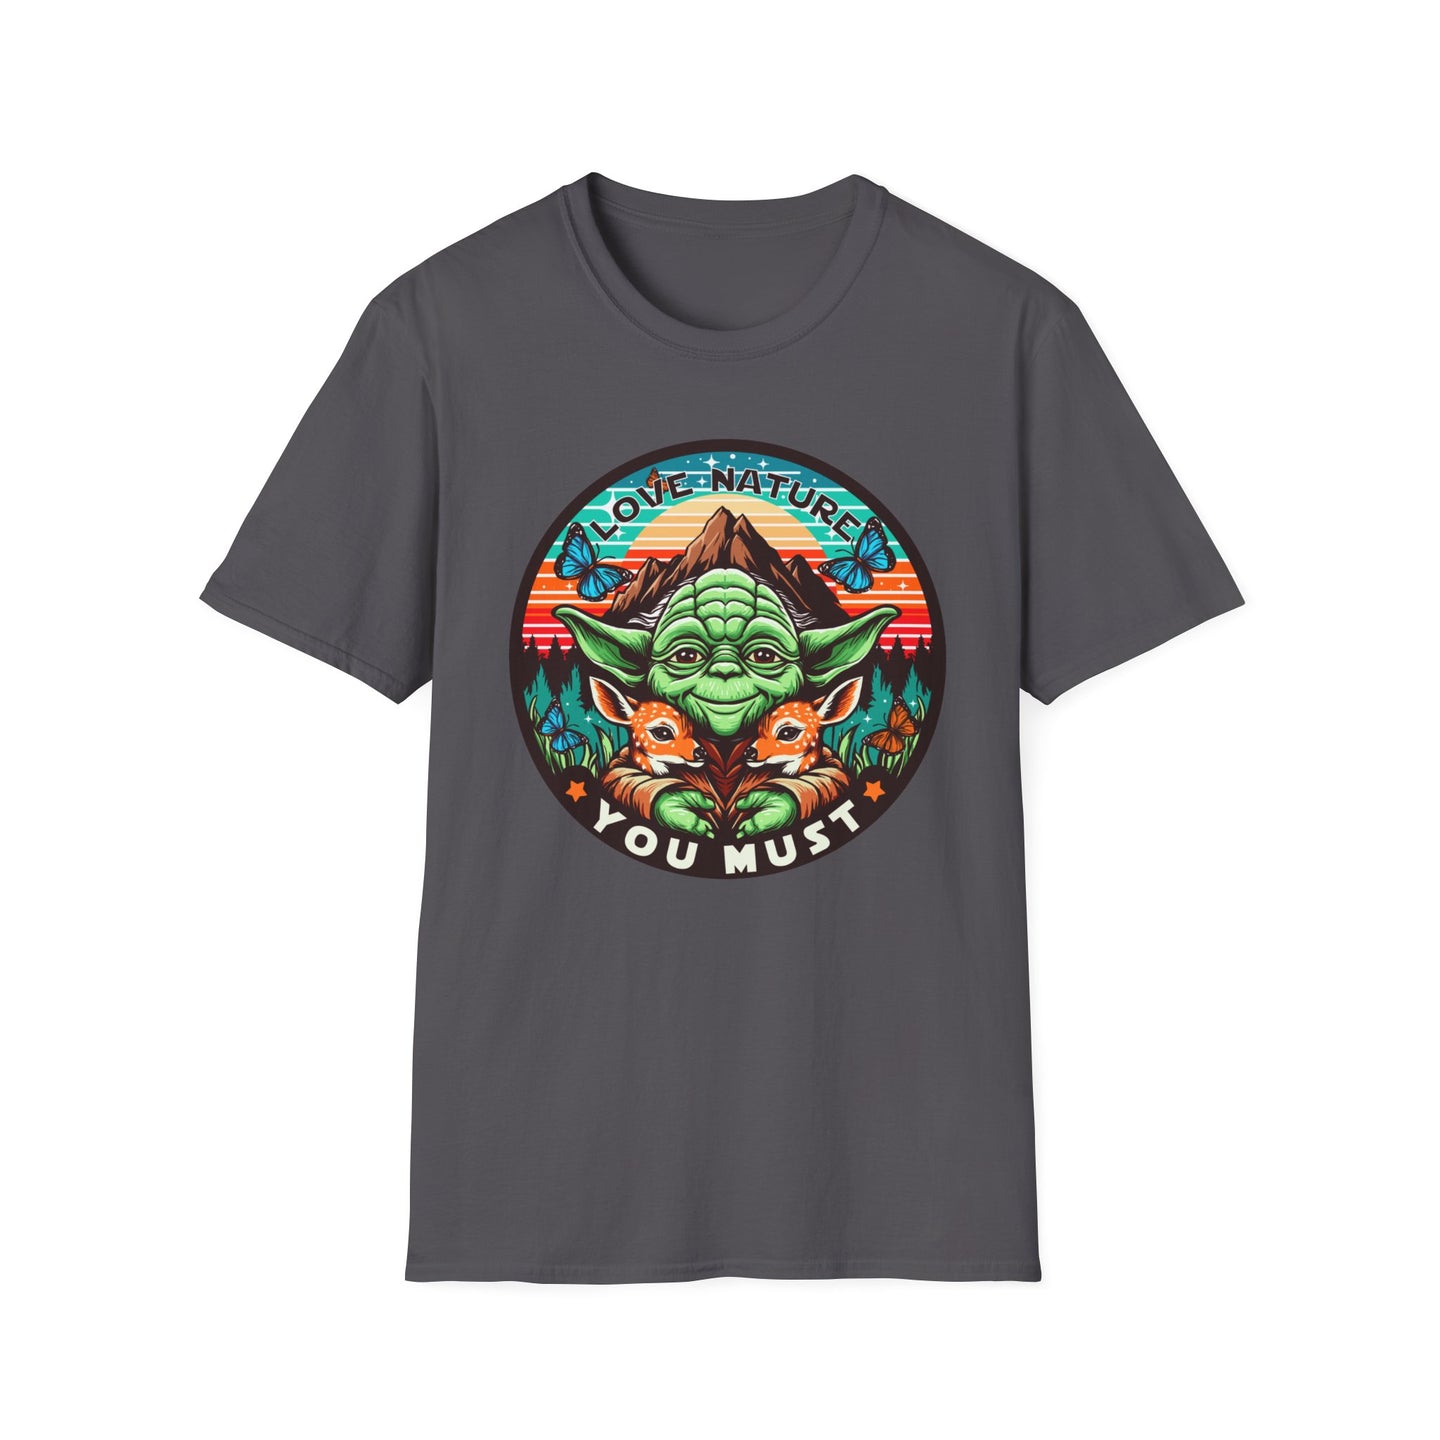 Yoda Love On Gildan Softstyle T-Shirt